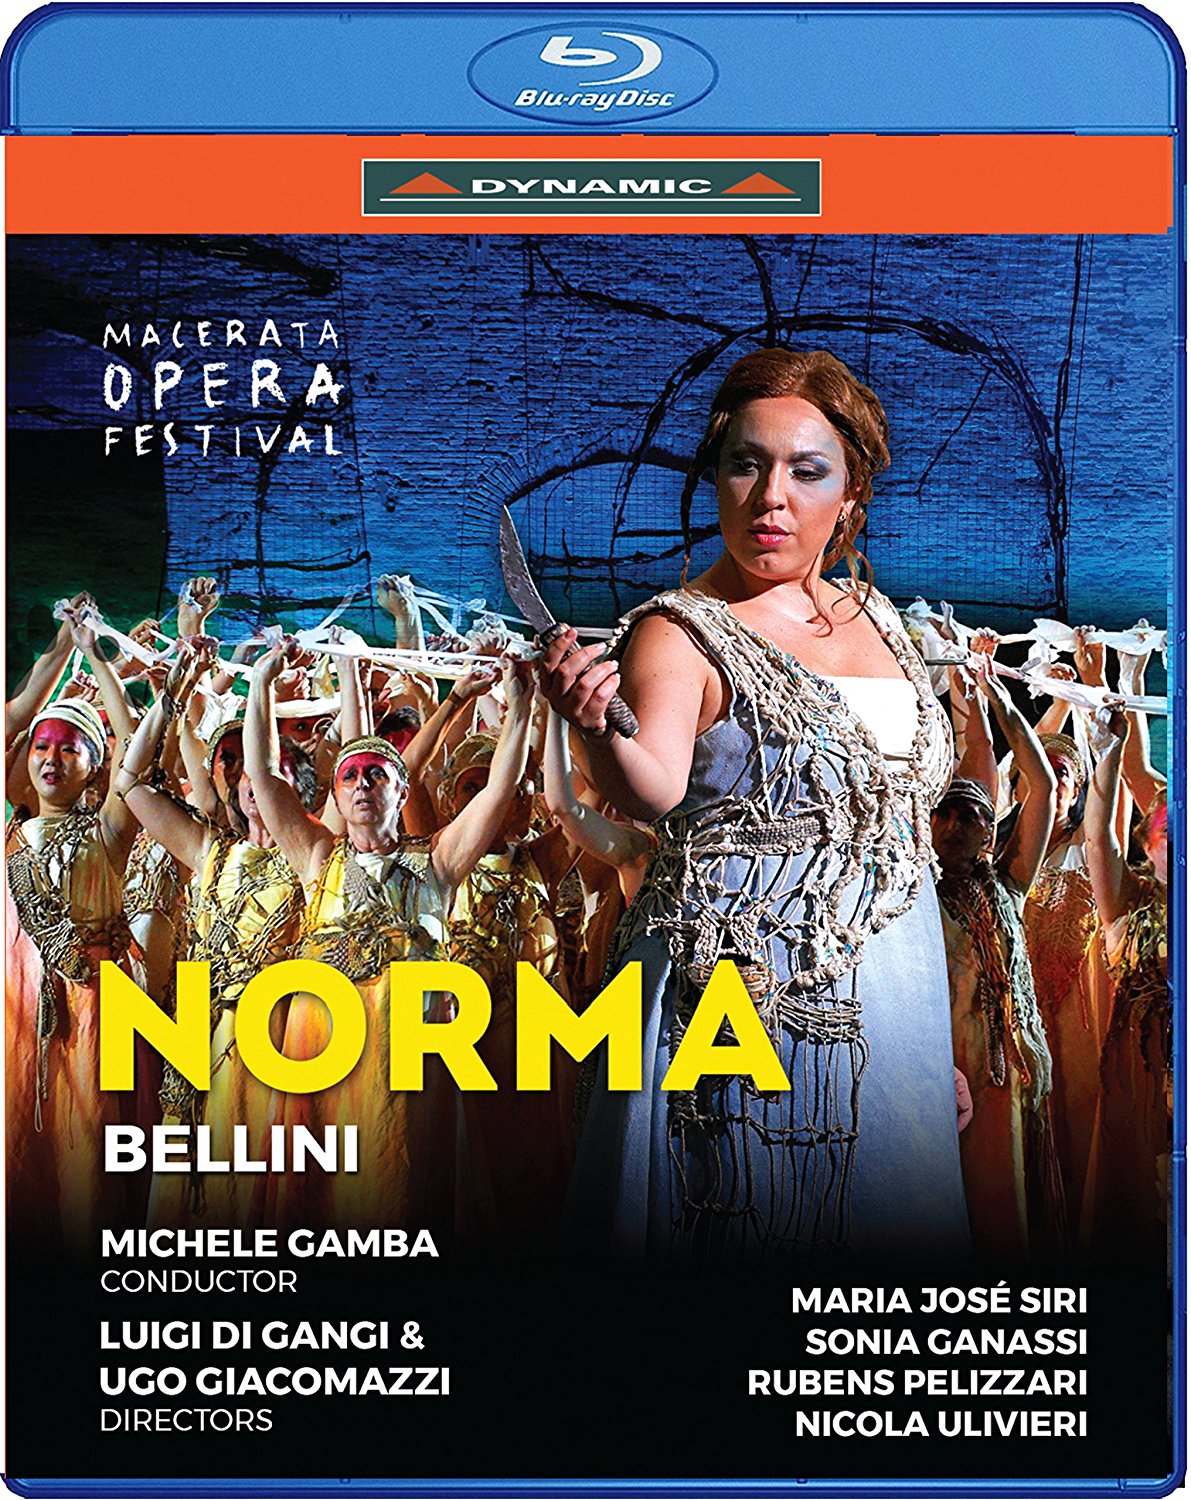 Music Blu-Ray Vincenzo Bellini - Norma NUOVO SIGILLATO, EDIZIONE DEL 23/08/2017 SUBITO DISPONIBILE